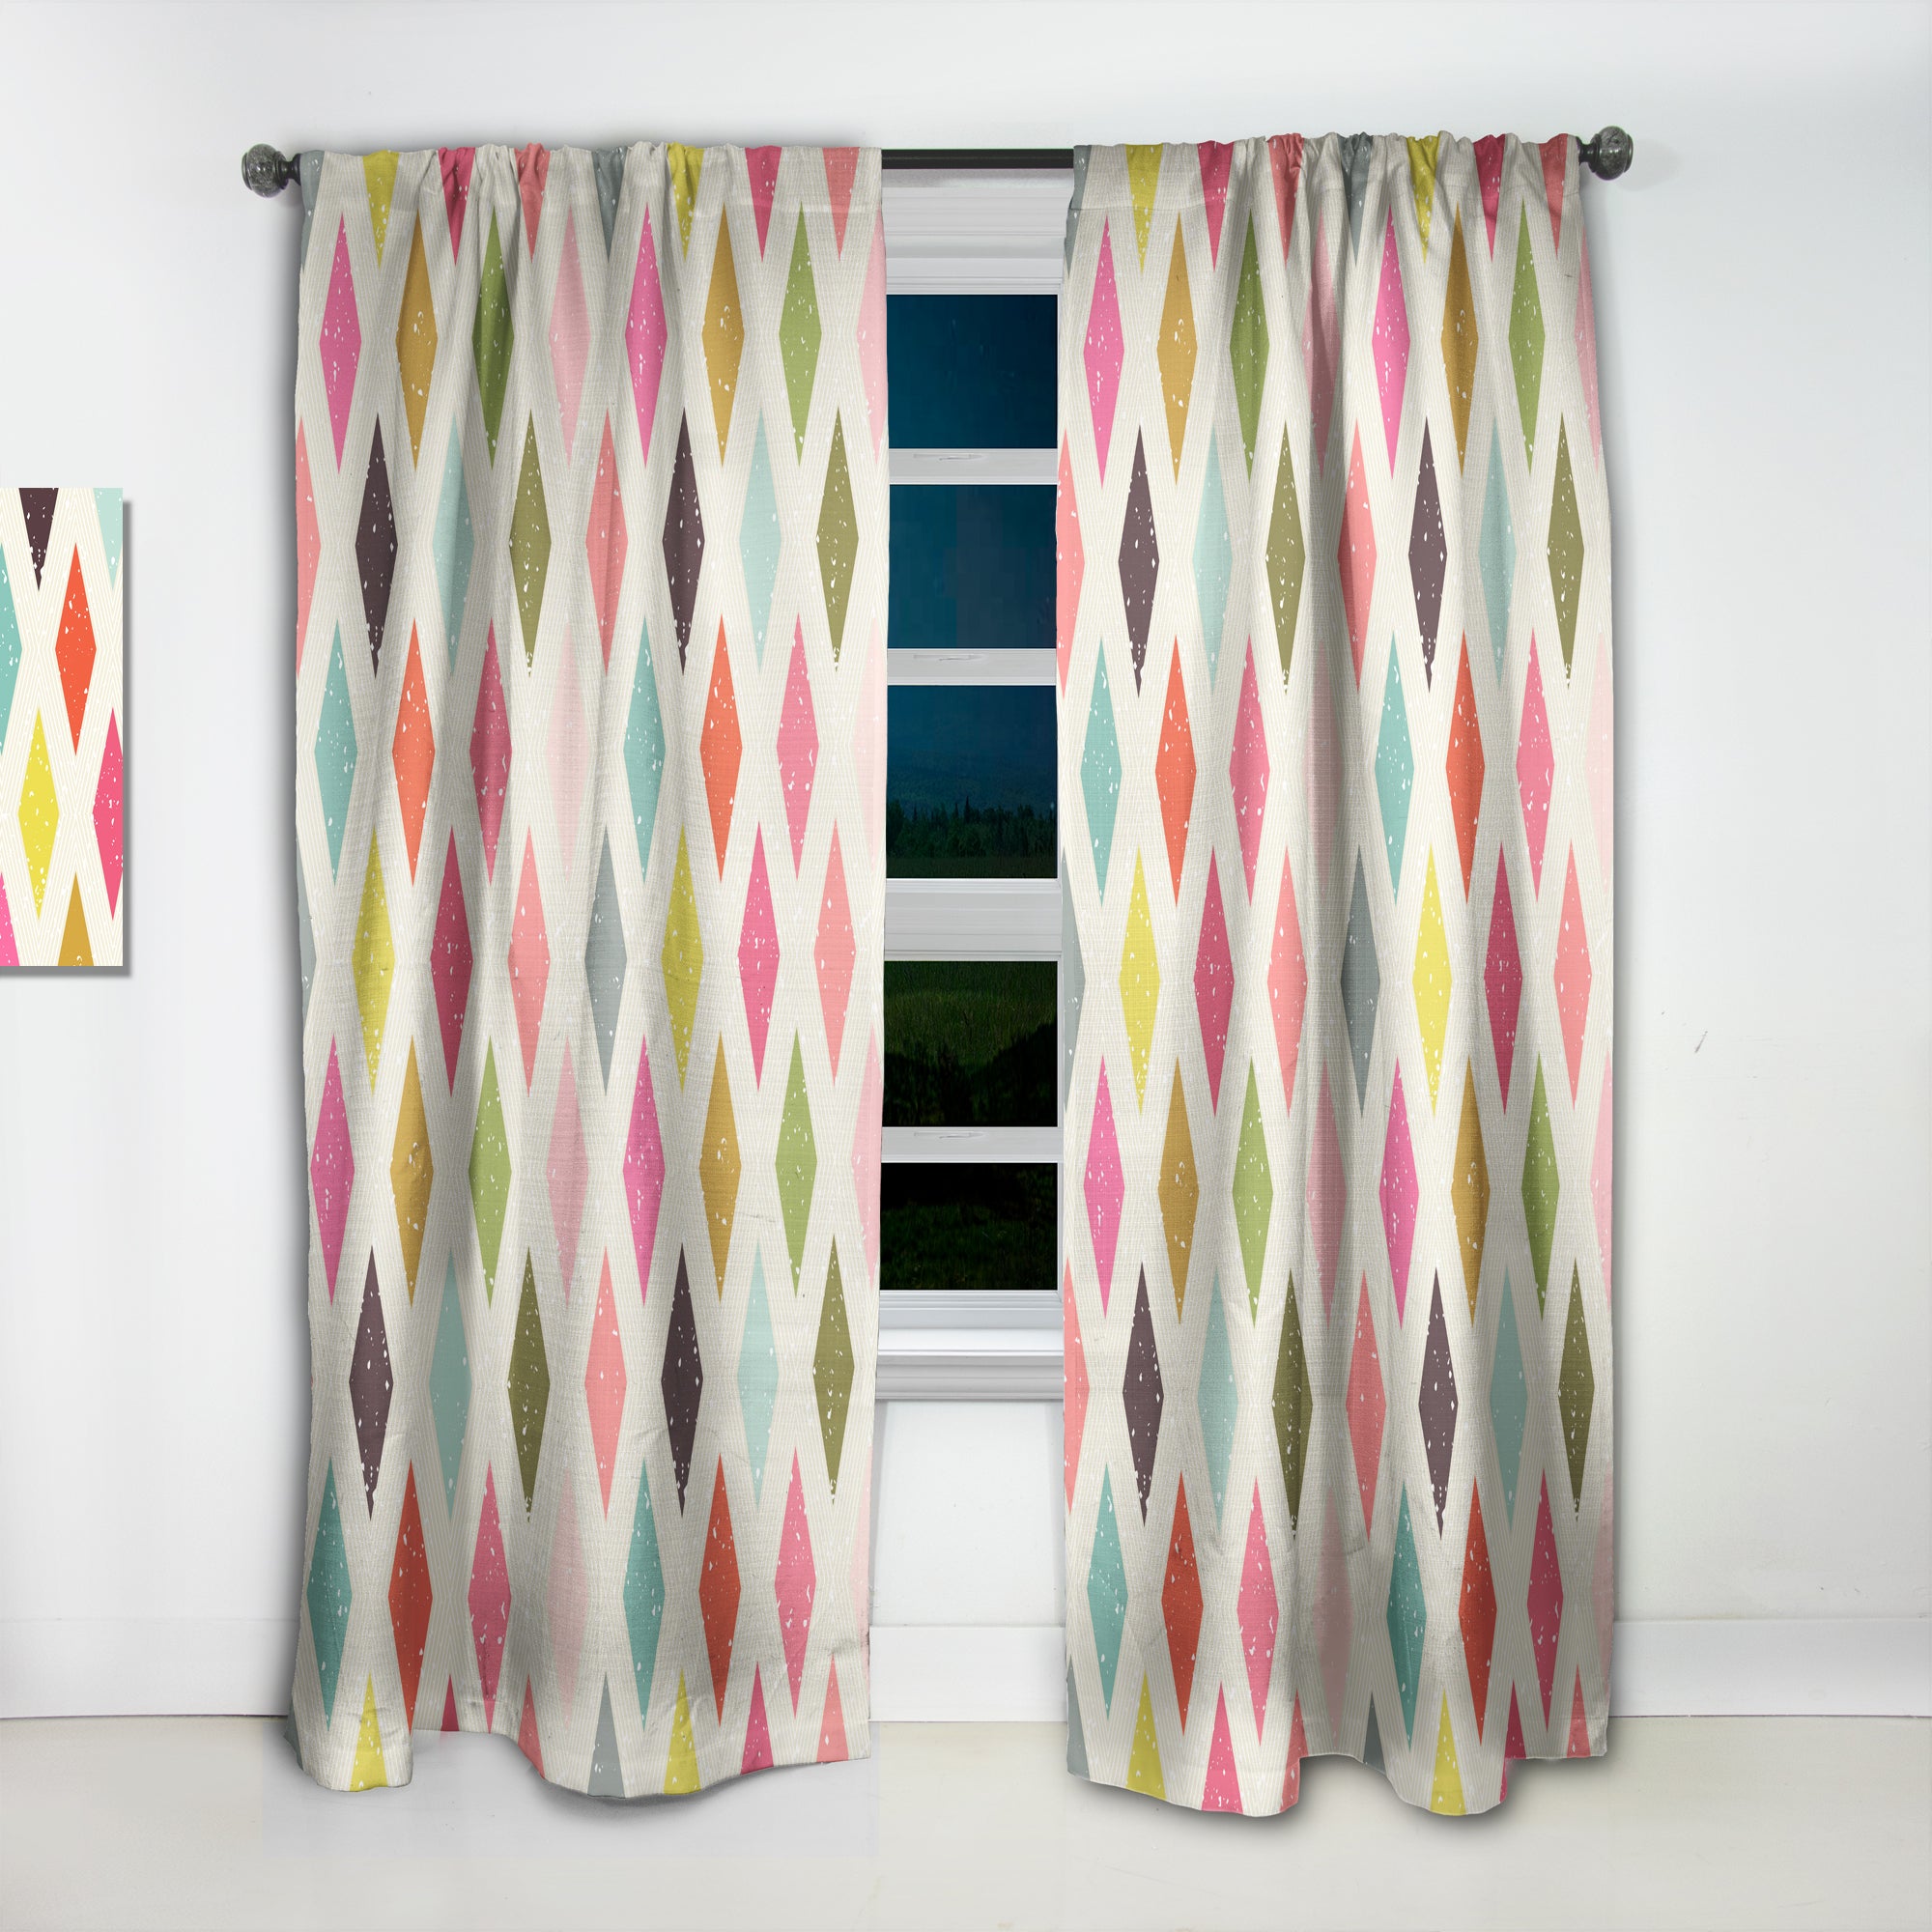 Designart 'Diamond Retro III' Mid-Century Modern Curtain Panel